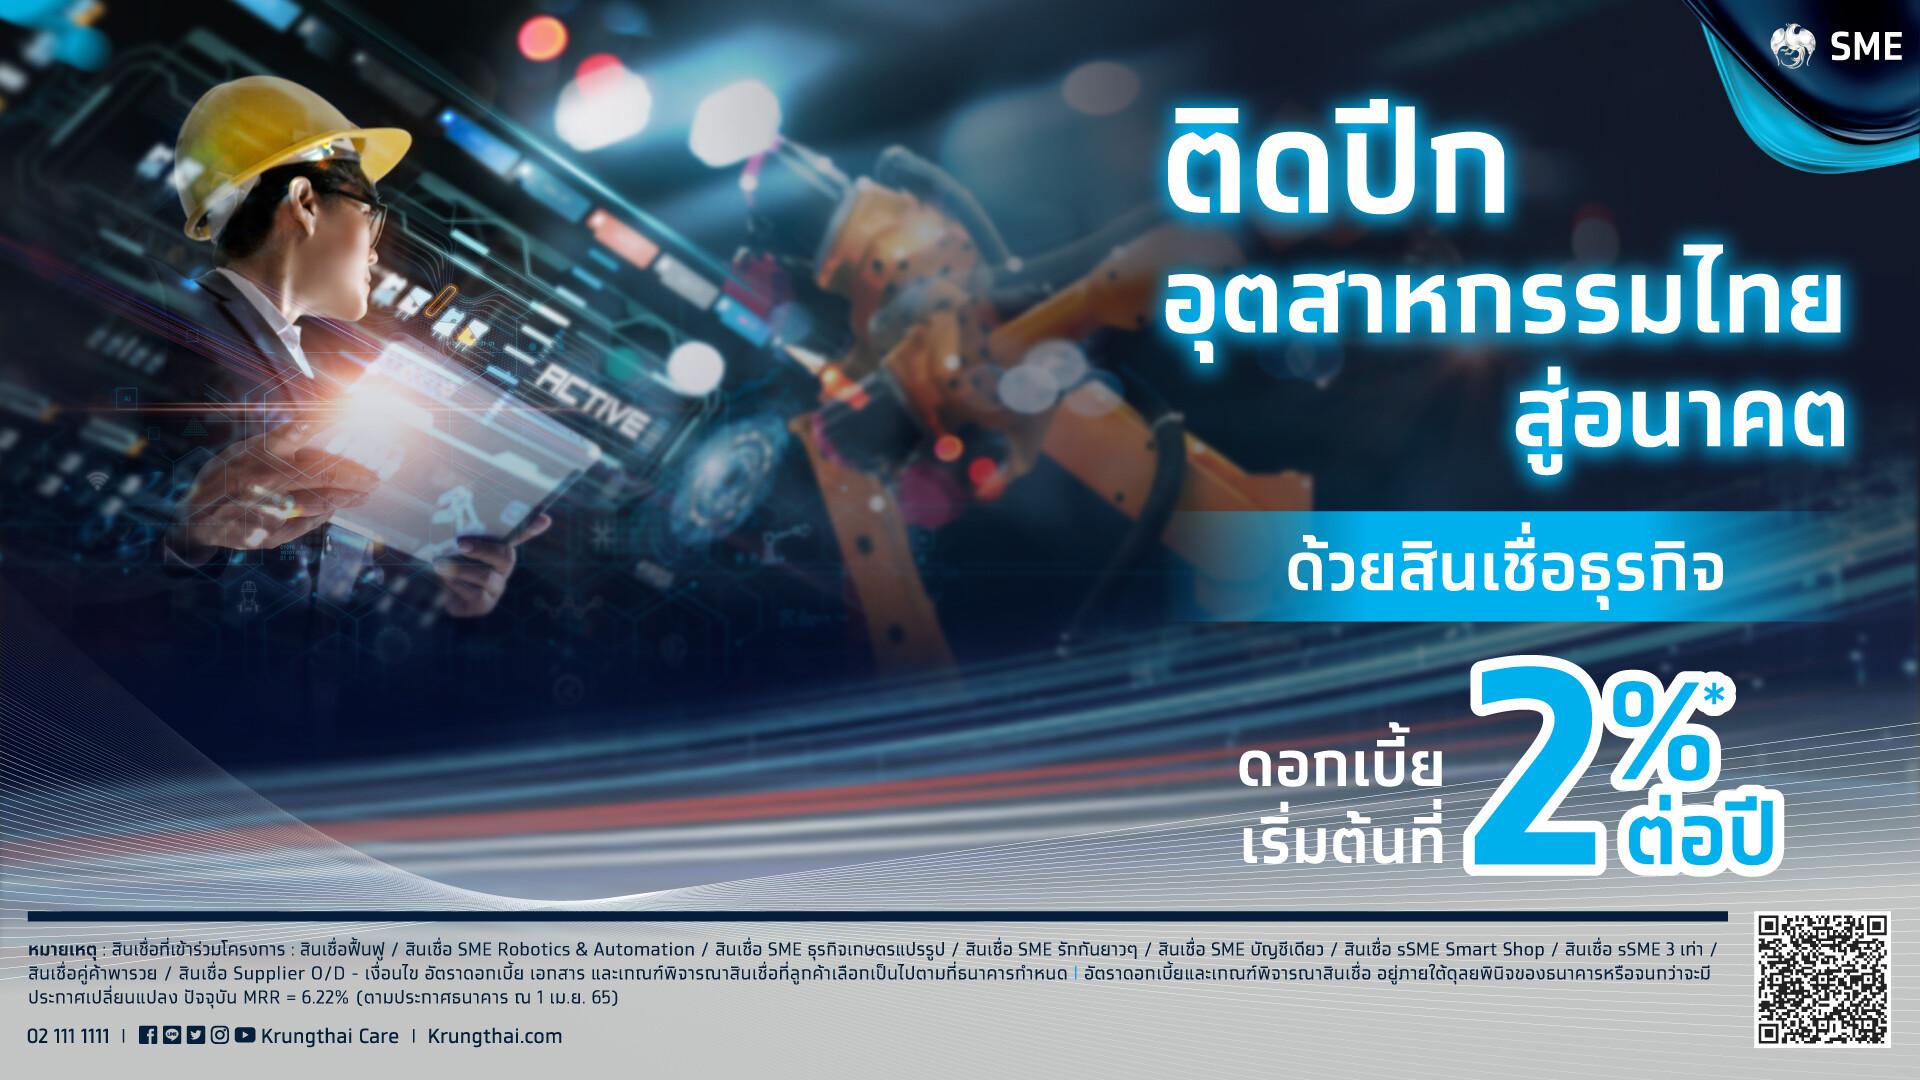 กรุงไทย "ติดปีกอุตสาหกรรมไทยสู่อนาคต" ขนทัพใหญ่เสิร์ฟผลิตภัณฑ์-บริการการเงินครบวงจร ในงาน FTI EXPO 2022 เชียงใหม่